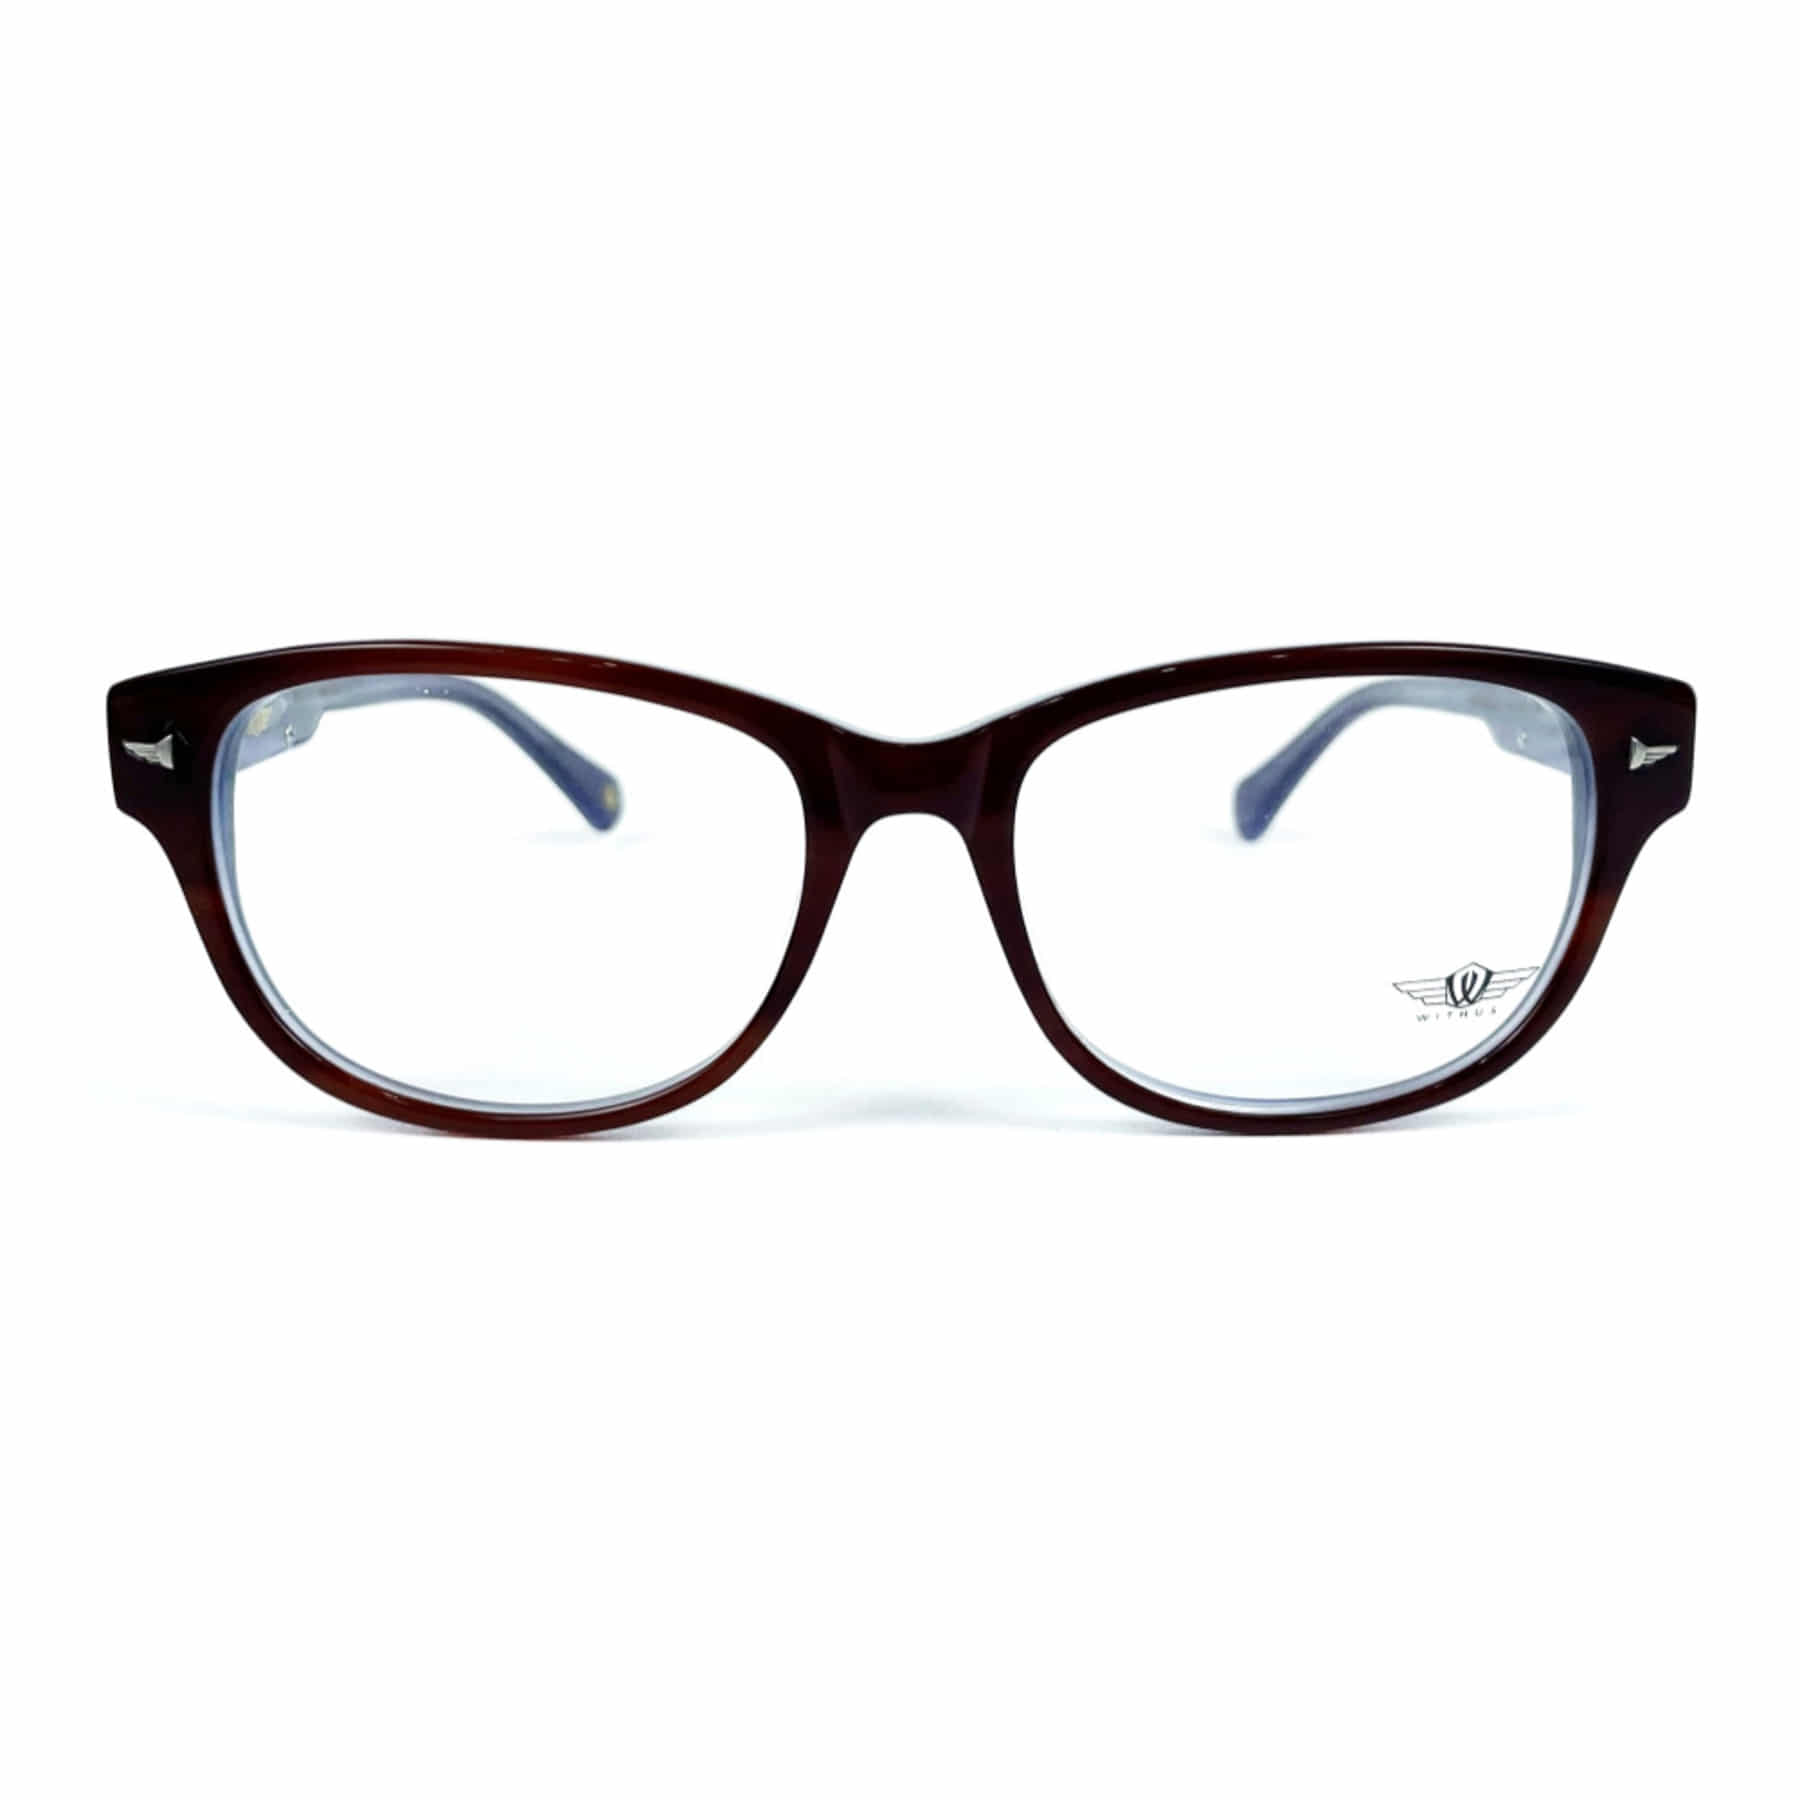 WITHUS-8130, Korean glasses, sunglasses, eyeglasses, glasses